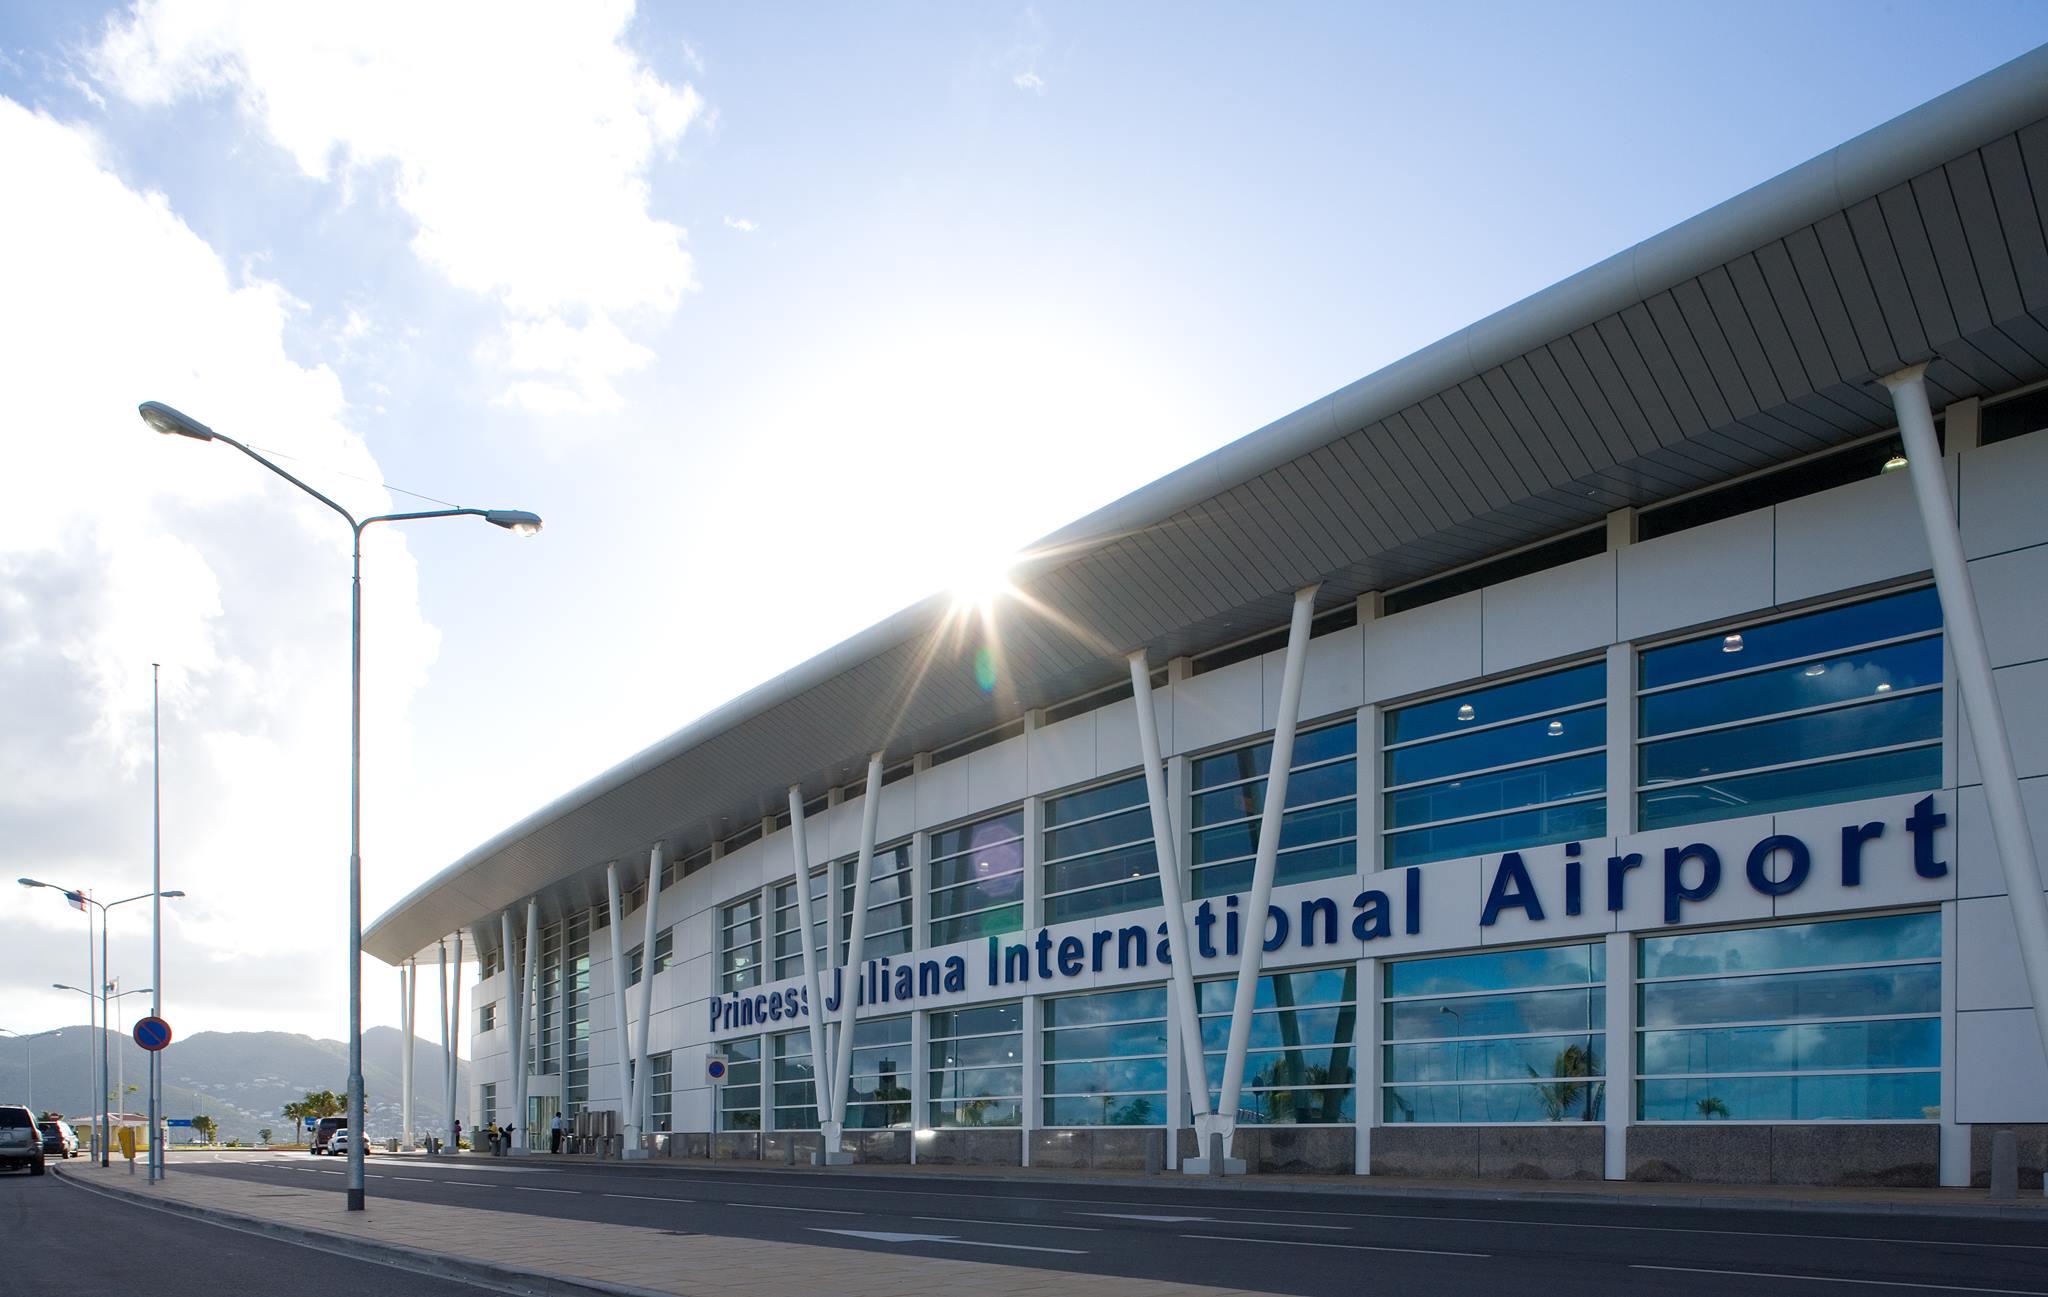 Juliana St Maarten airport car rental in st maarten 